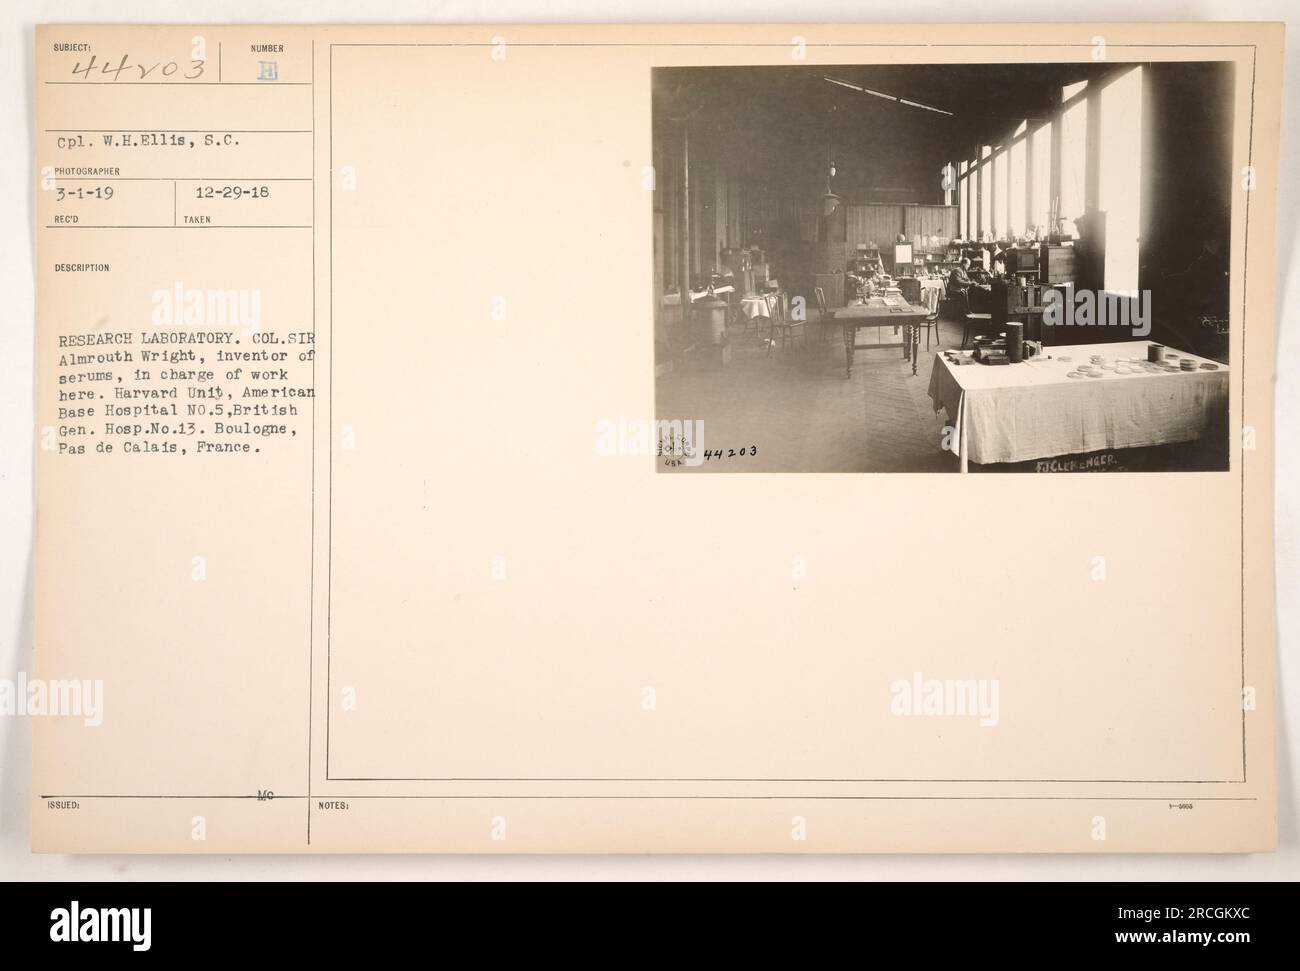 CPL. W.H. Ellis, un fotografo, ha scattato questa immagine il 1 marzo 1919 al laboratorio di ricerca di Boulogne, in Francia. La fotografia raffigura il colonnello Sir Almroth Wright, l'inventore dei sieri, che sovrintende al lavoro. Erano presenti anche l'unità di Harvard dell'American base Hospital No.5 e il British General Hospital No.13. Figure degne di nota sono Figley e Linger. Foto Stock